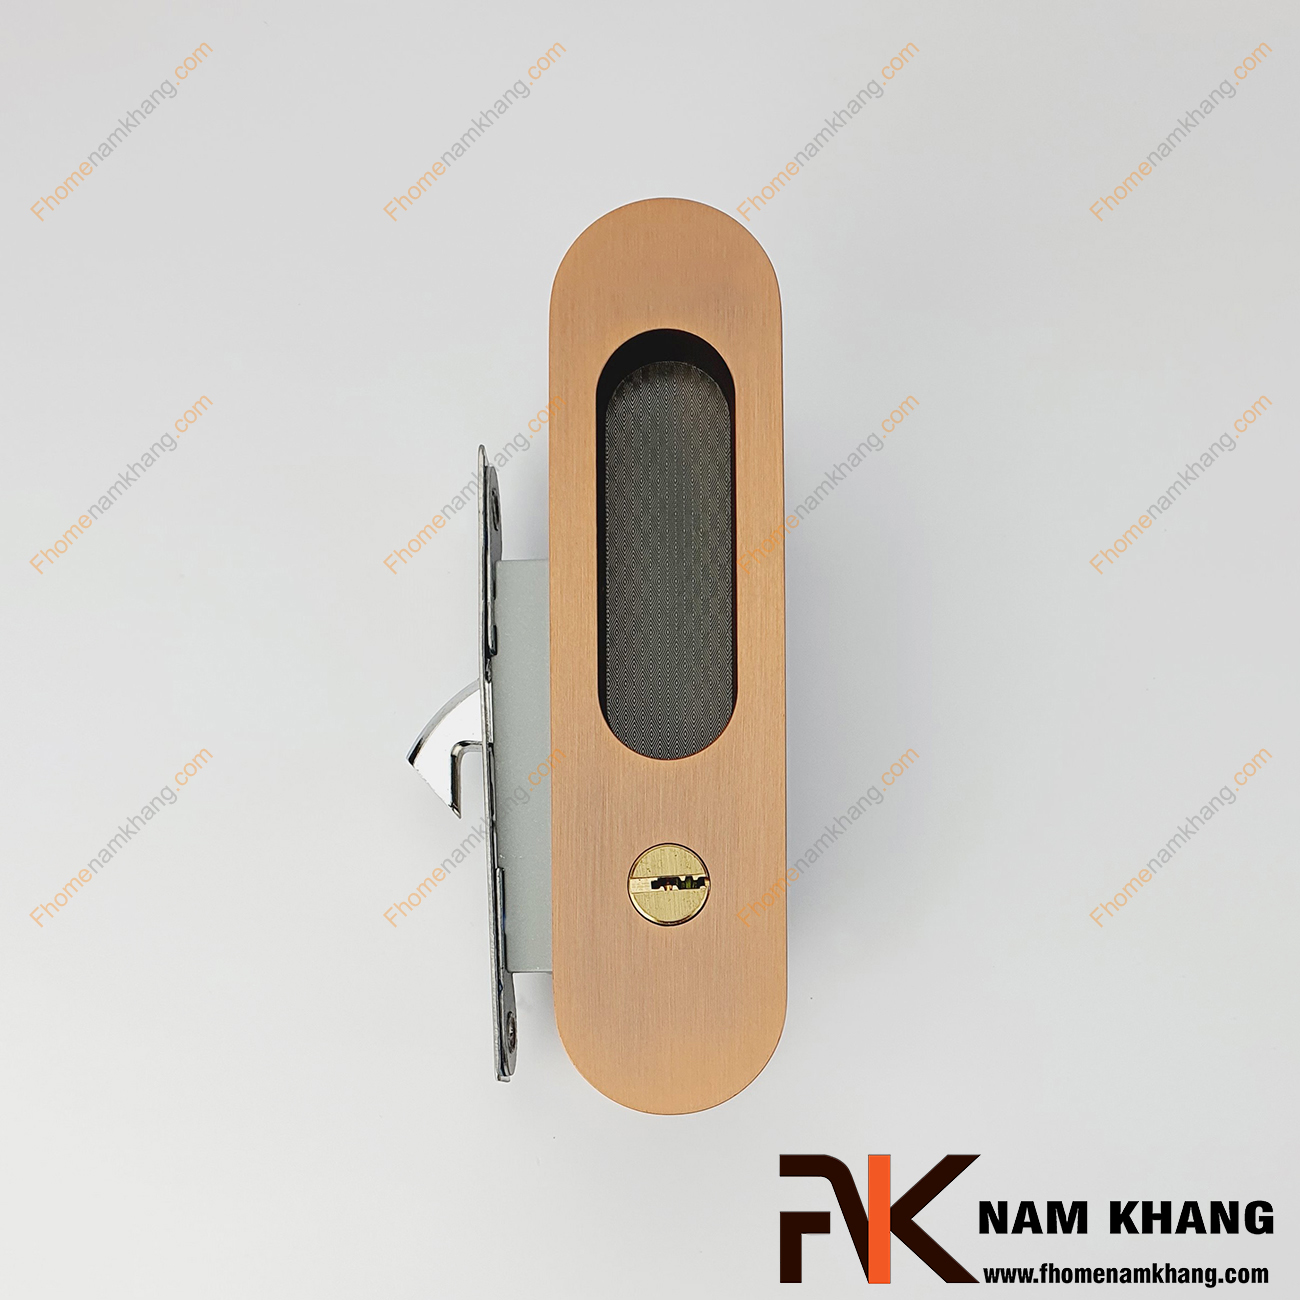 Khóa âm cửa lùa bằng inox màu hồng mờ NK568H-HM là dòng khóa được sử dụng phổ biến và là lựa chọn hàng đầu cho các công trình nhà ở, chung cư, biệt thự.